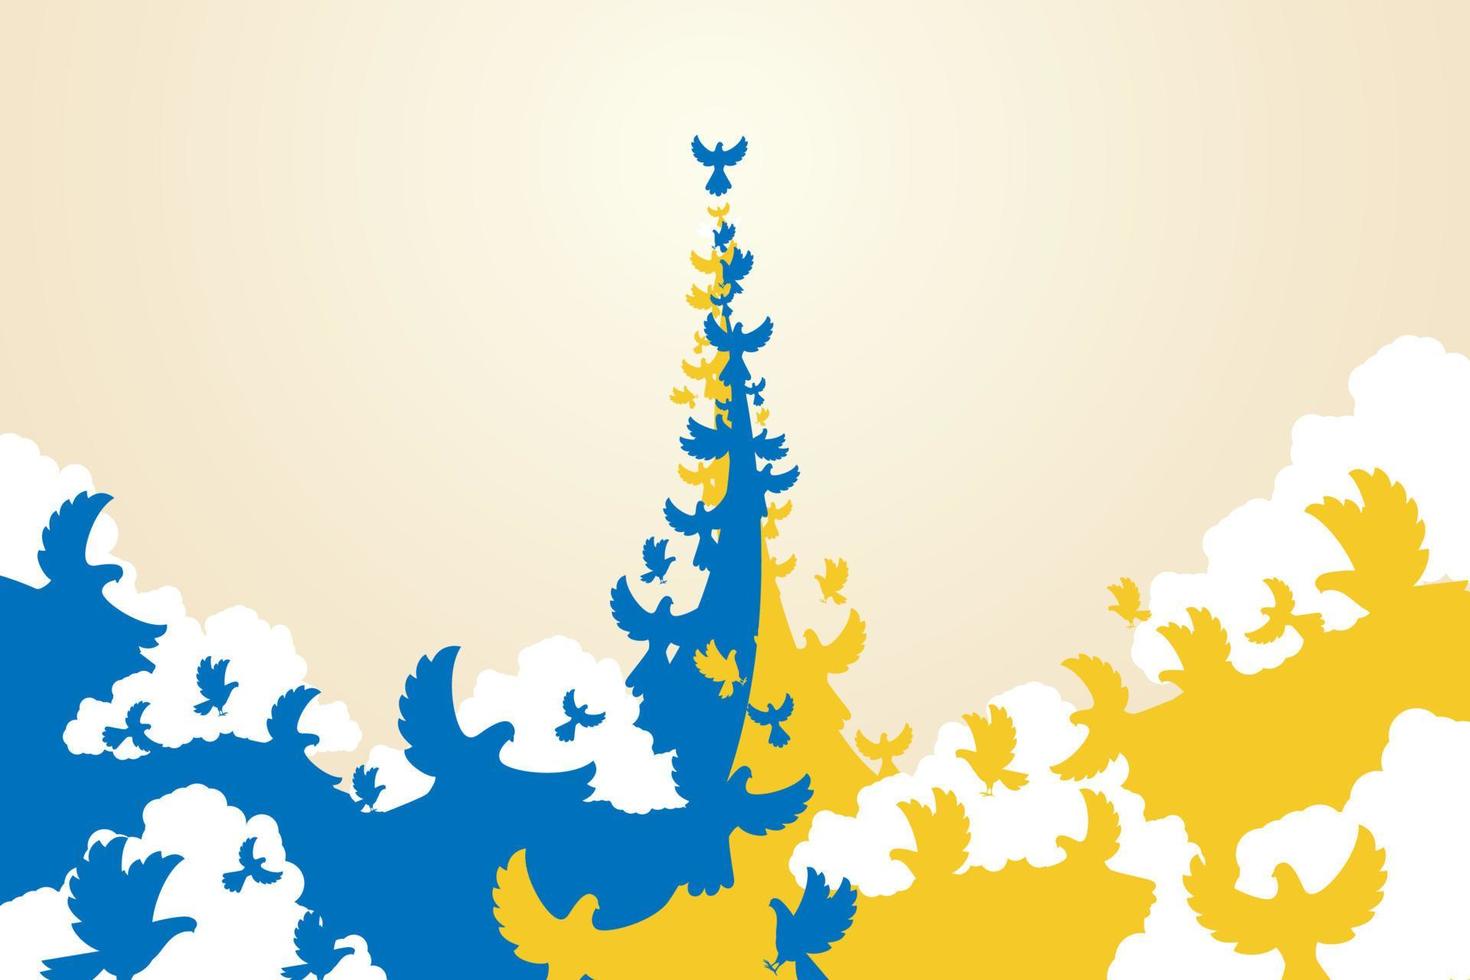 palomas azules y palomas amarillas volaron juntas para formar la bandera ucraniana. vector